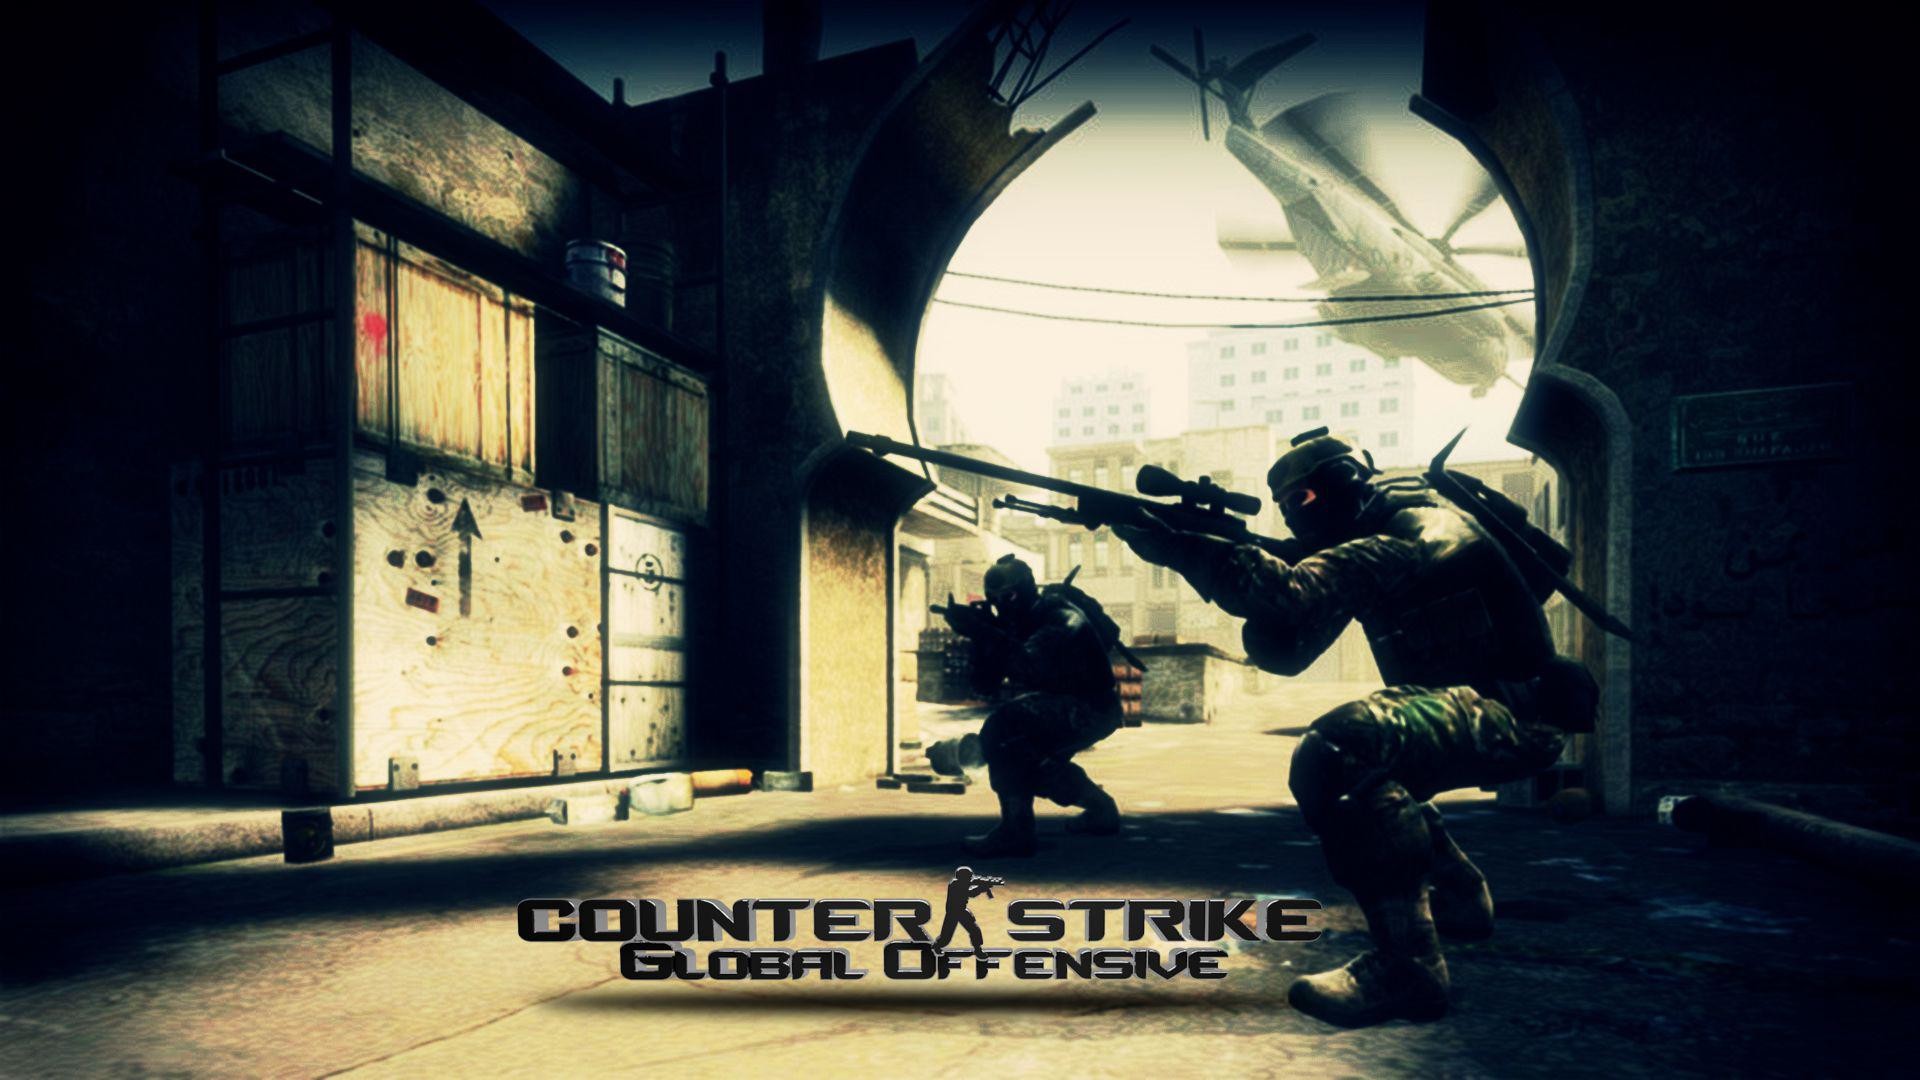 42+] Counter Strike Wallpaper Download - WallpaperSafari